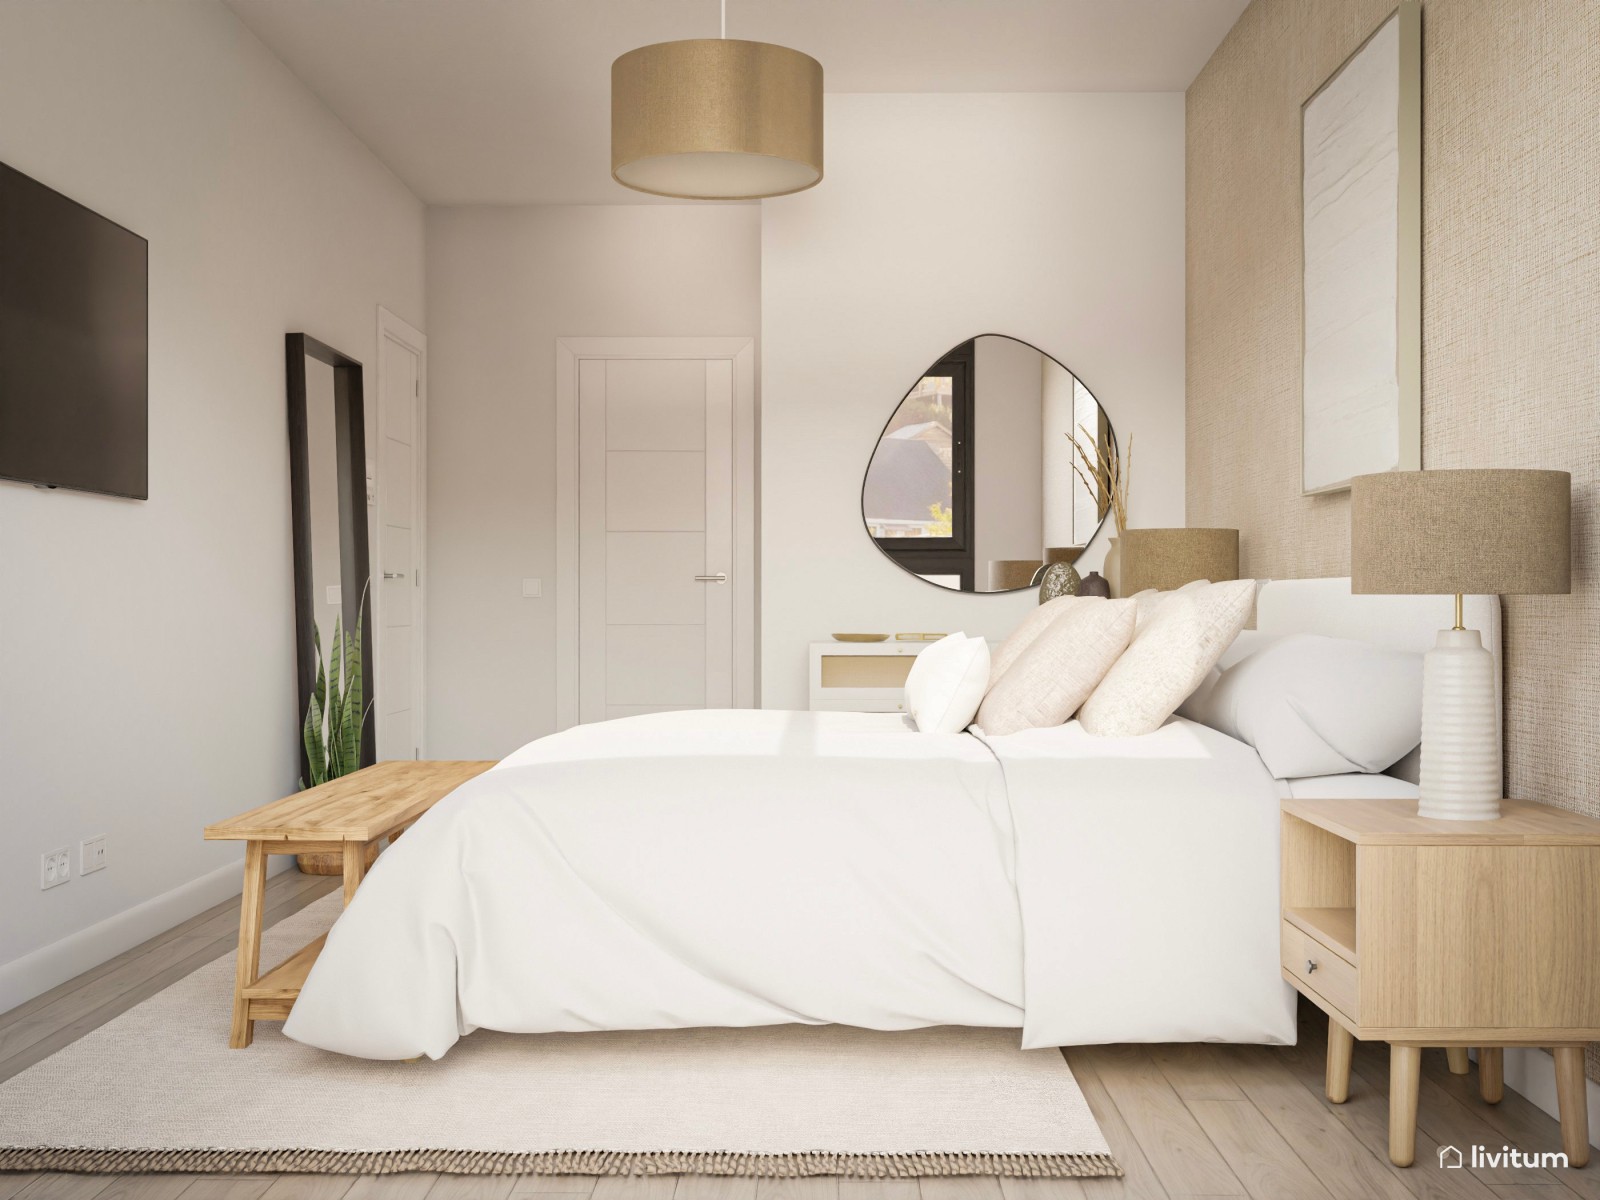 Dormitorio nórdico y rústico con texturas naturales 